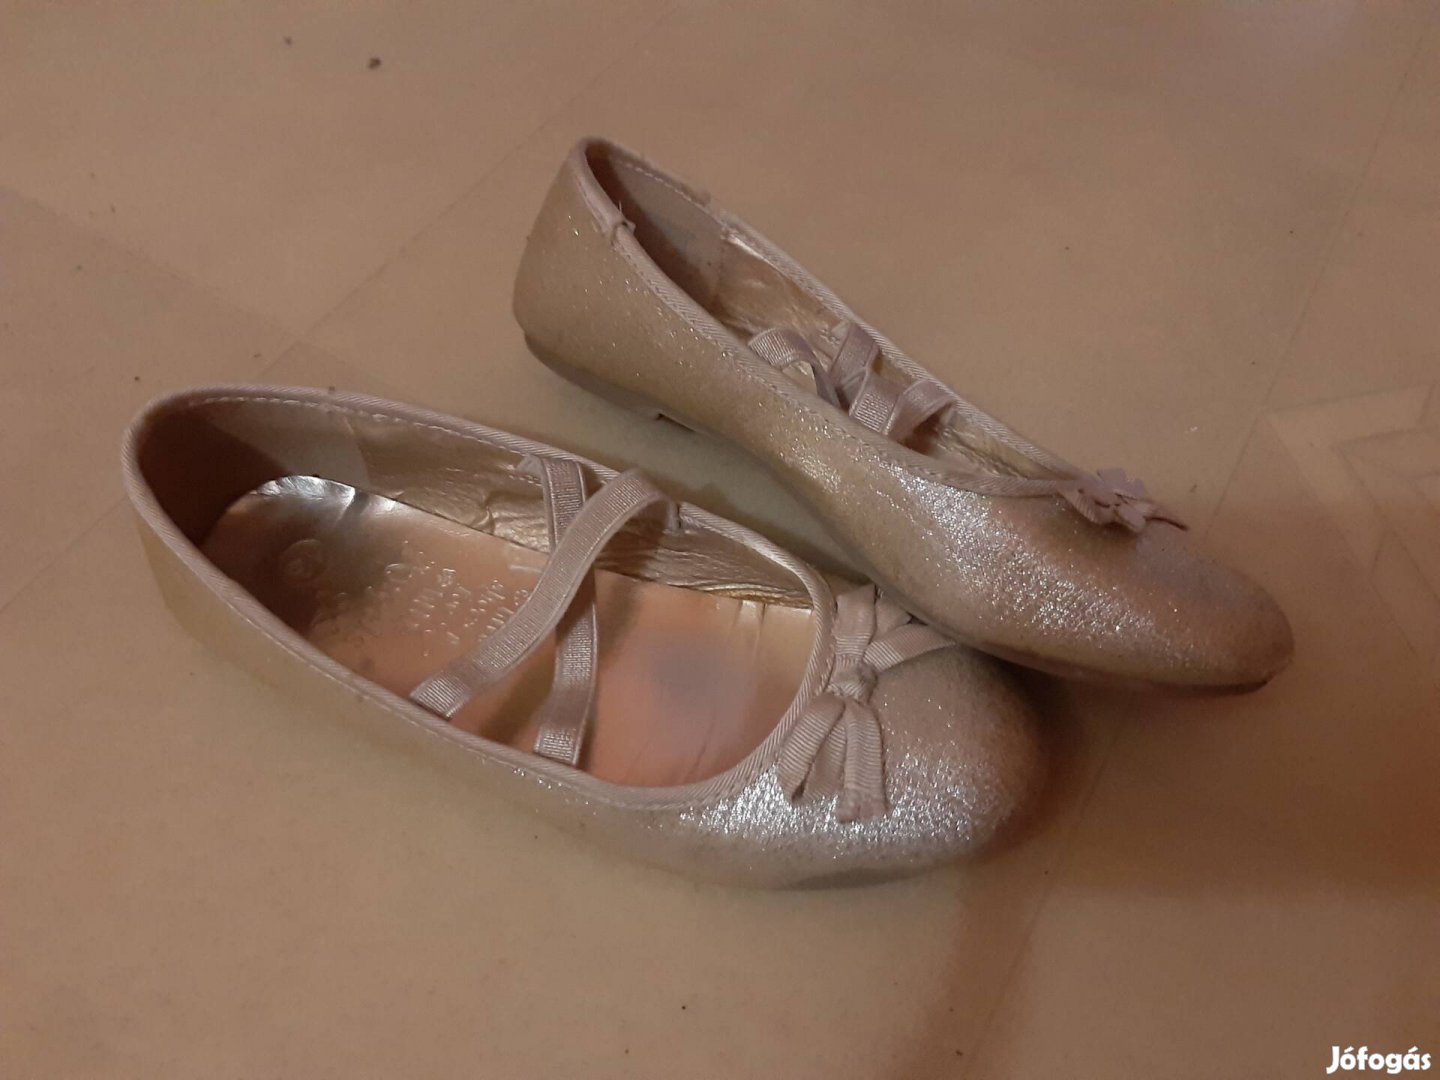 Csinos kis balerina cipő 32 méret, lány cipő